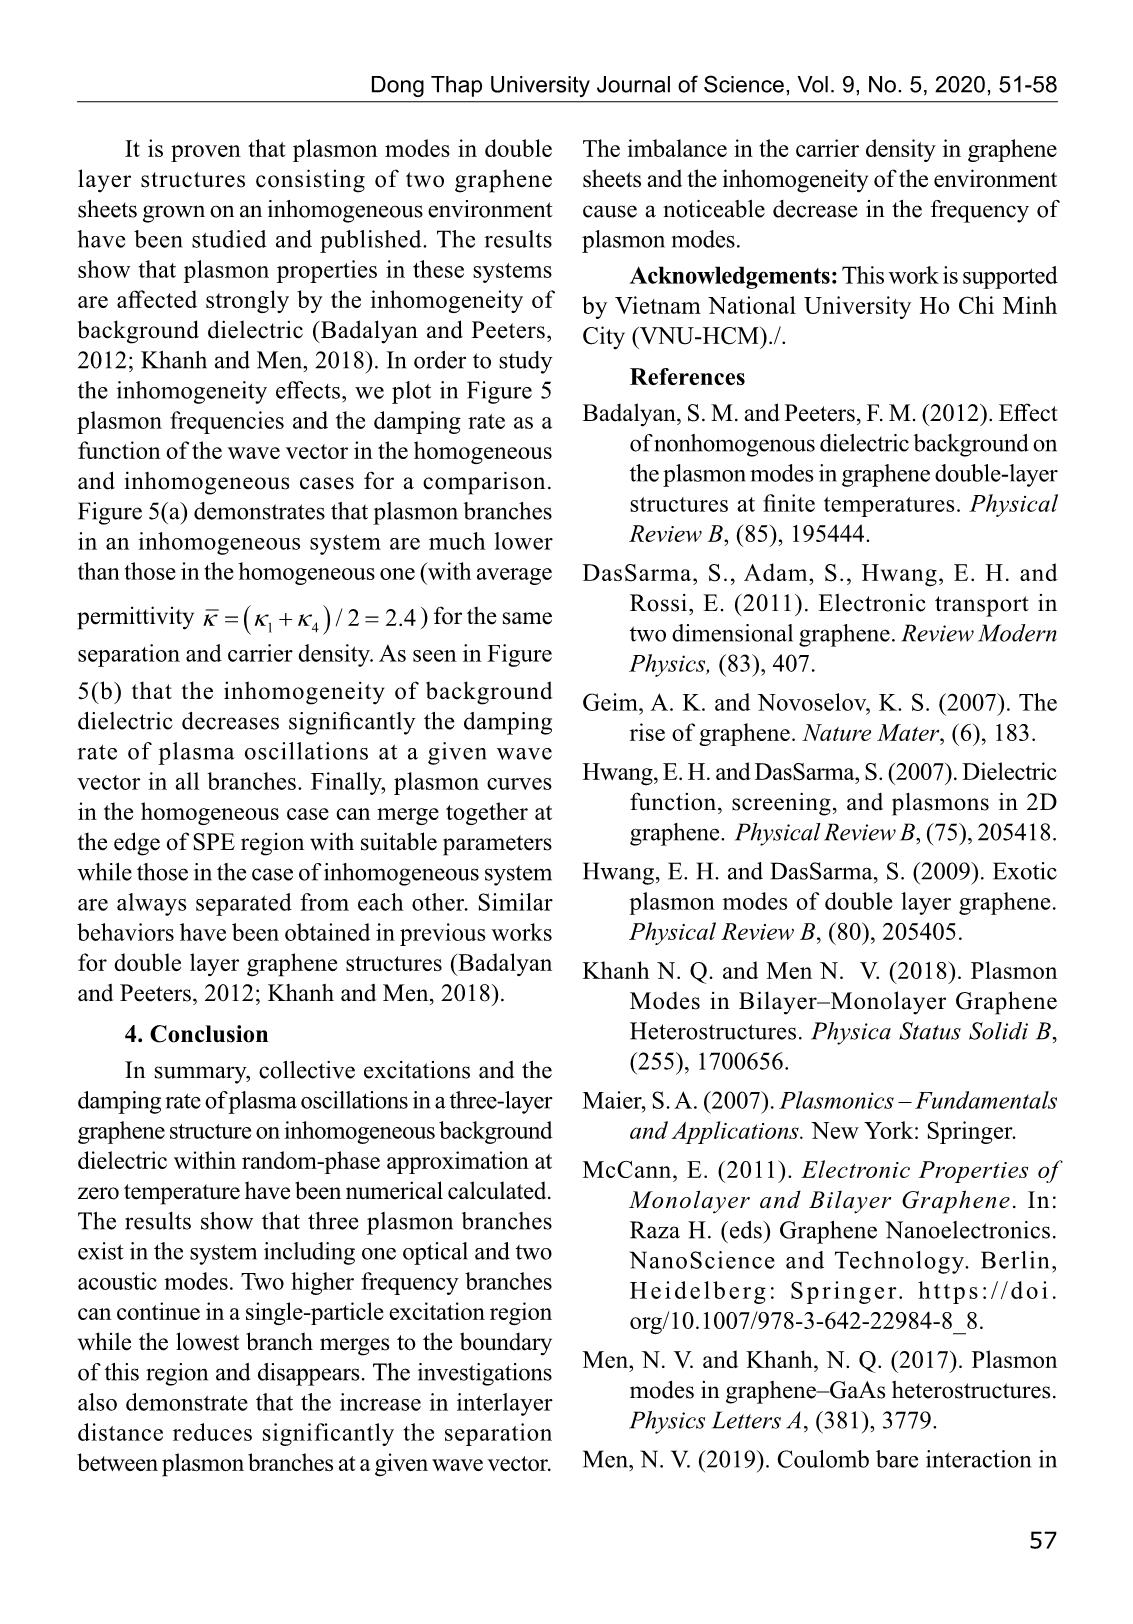 Phổ Plasmon trong hệ ba lớp Graphene với điện môi nền không đồng nhất trang 7